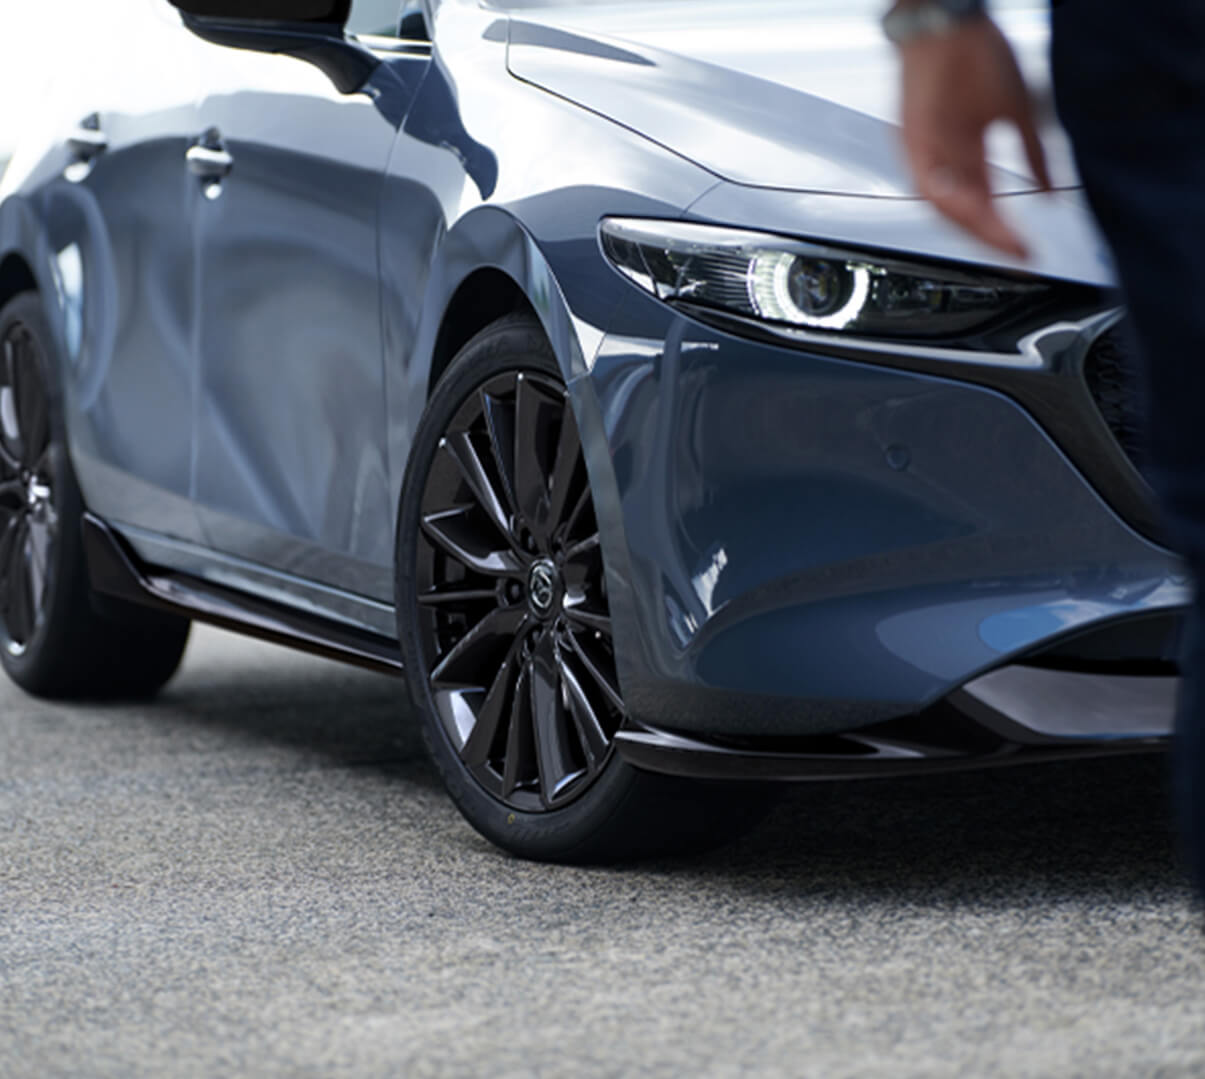 Det aerodynamiske sæt bestående af sideskørter og frontspoiler til Mazda3.